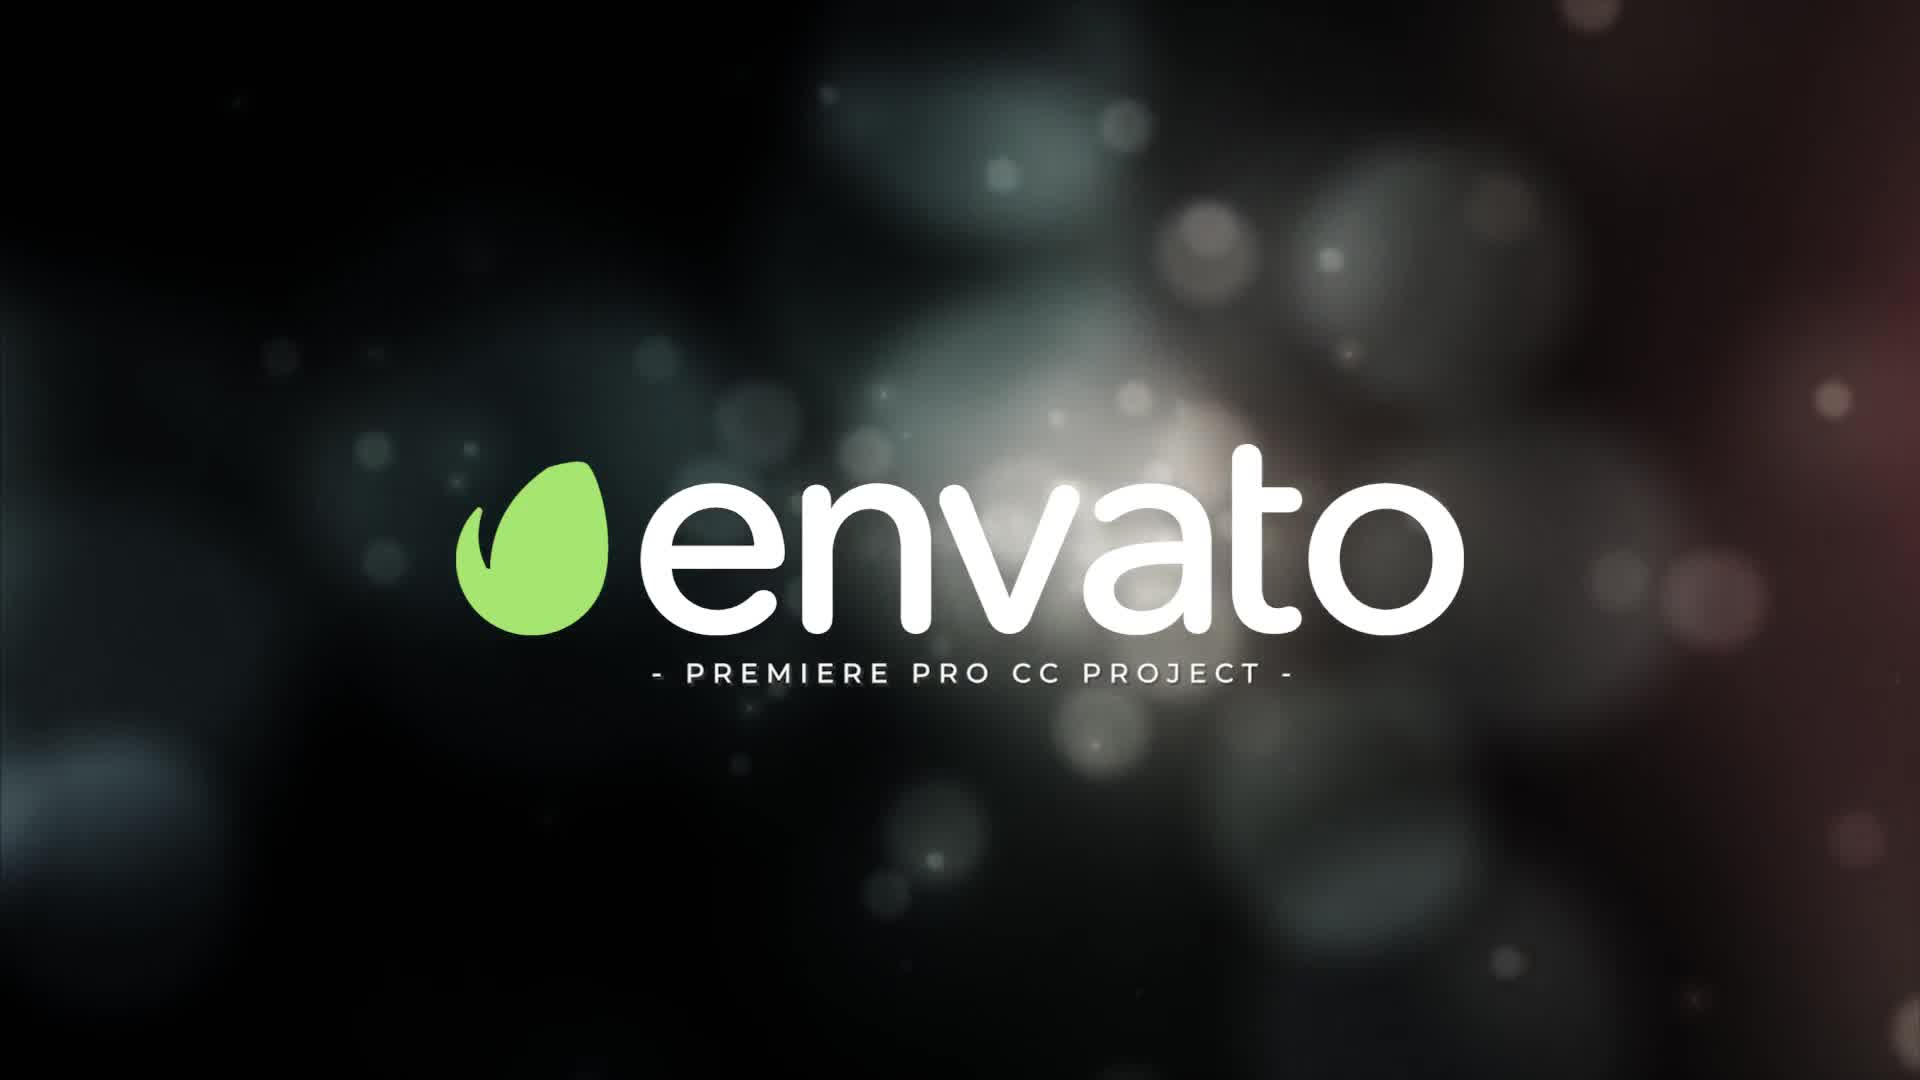 Cinematic Logo Intro For Premiere Pro - Download Videohive 23020888